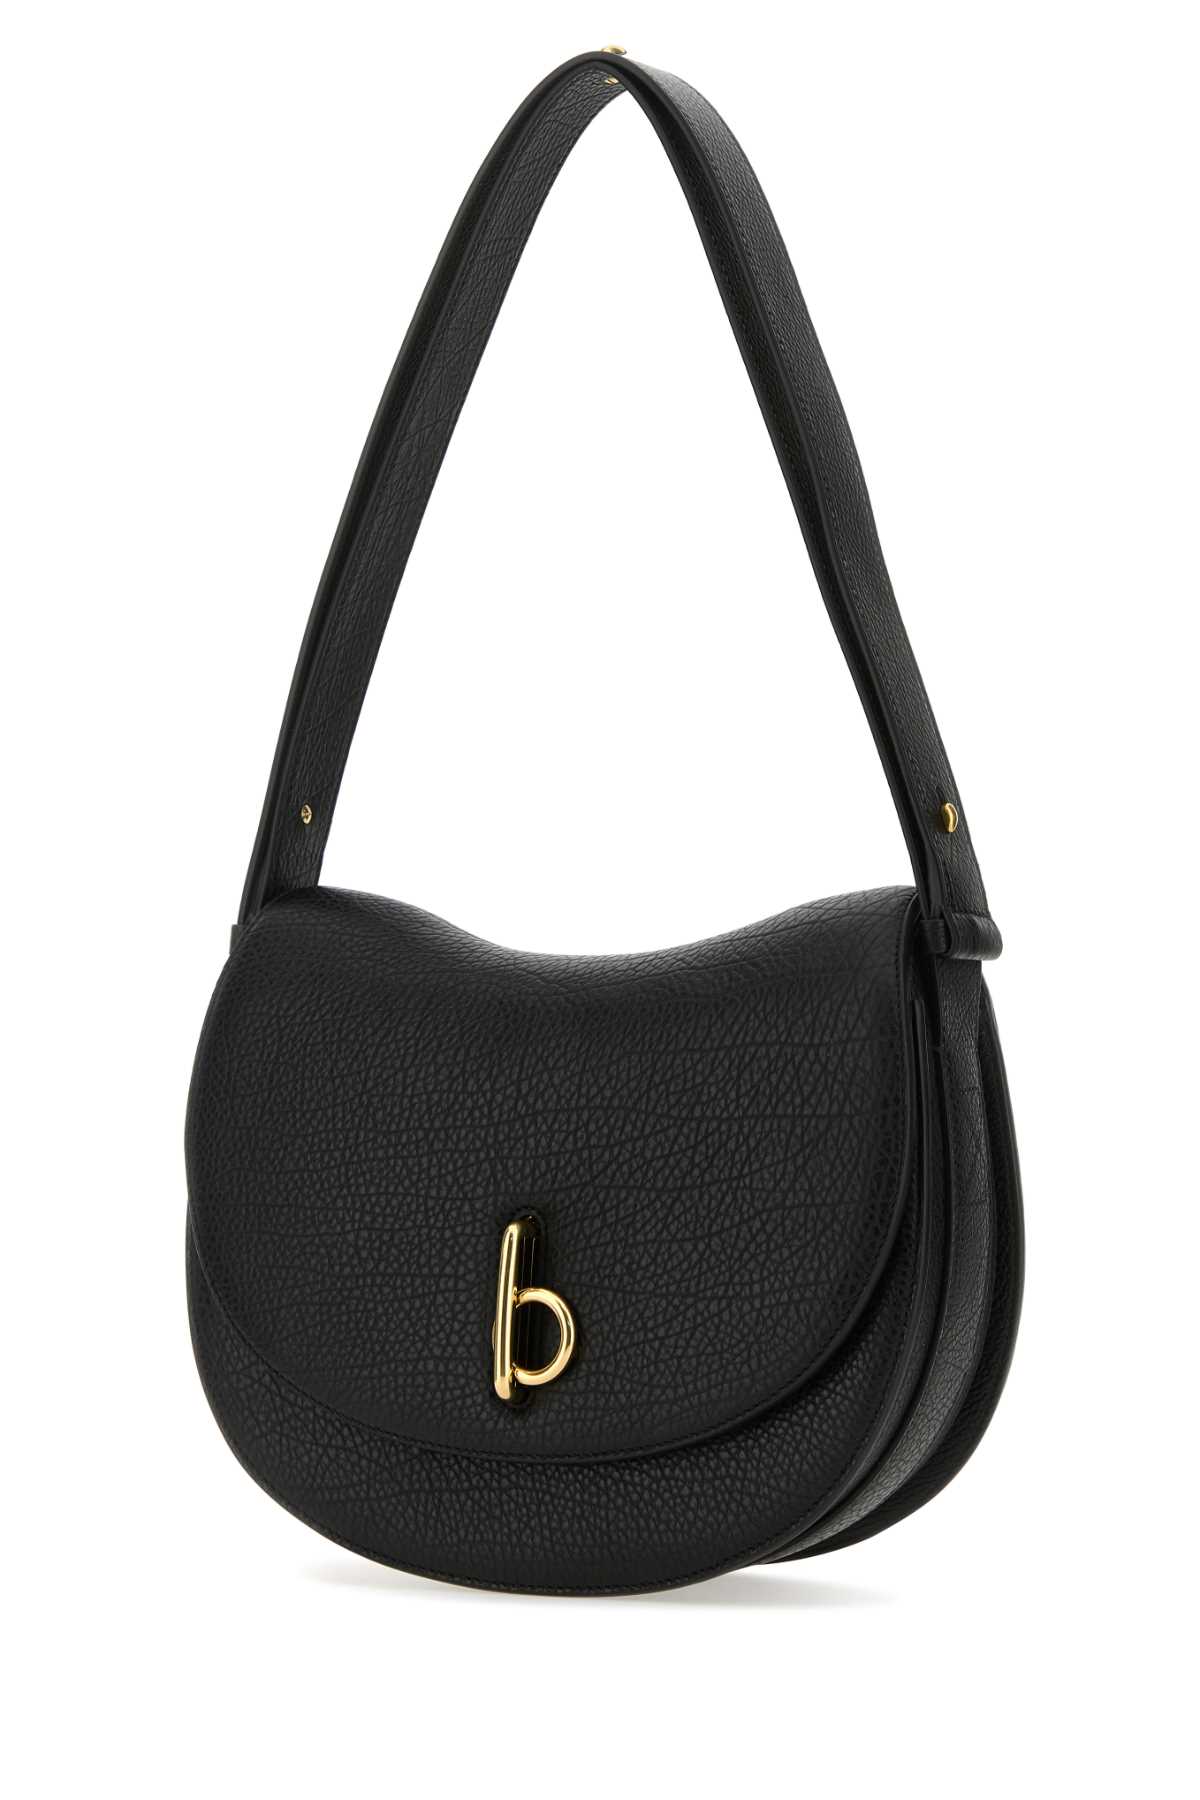 Shop Burberry Black Leather Medium Rocking Horse Shoulder Bag